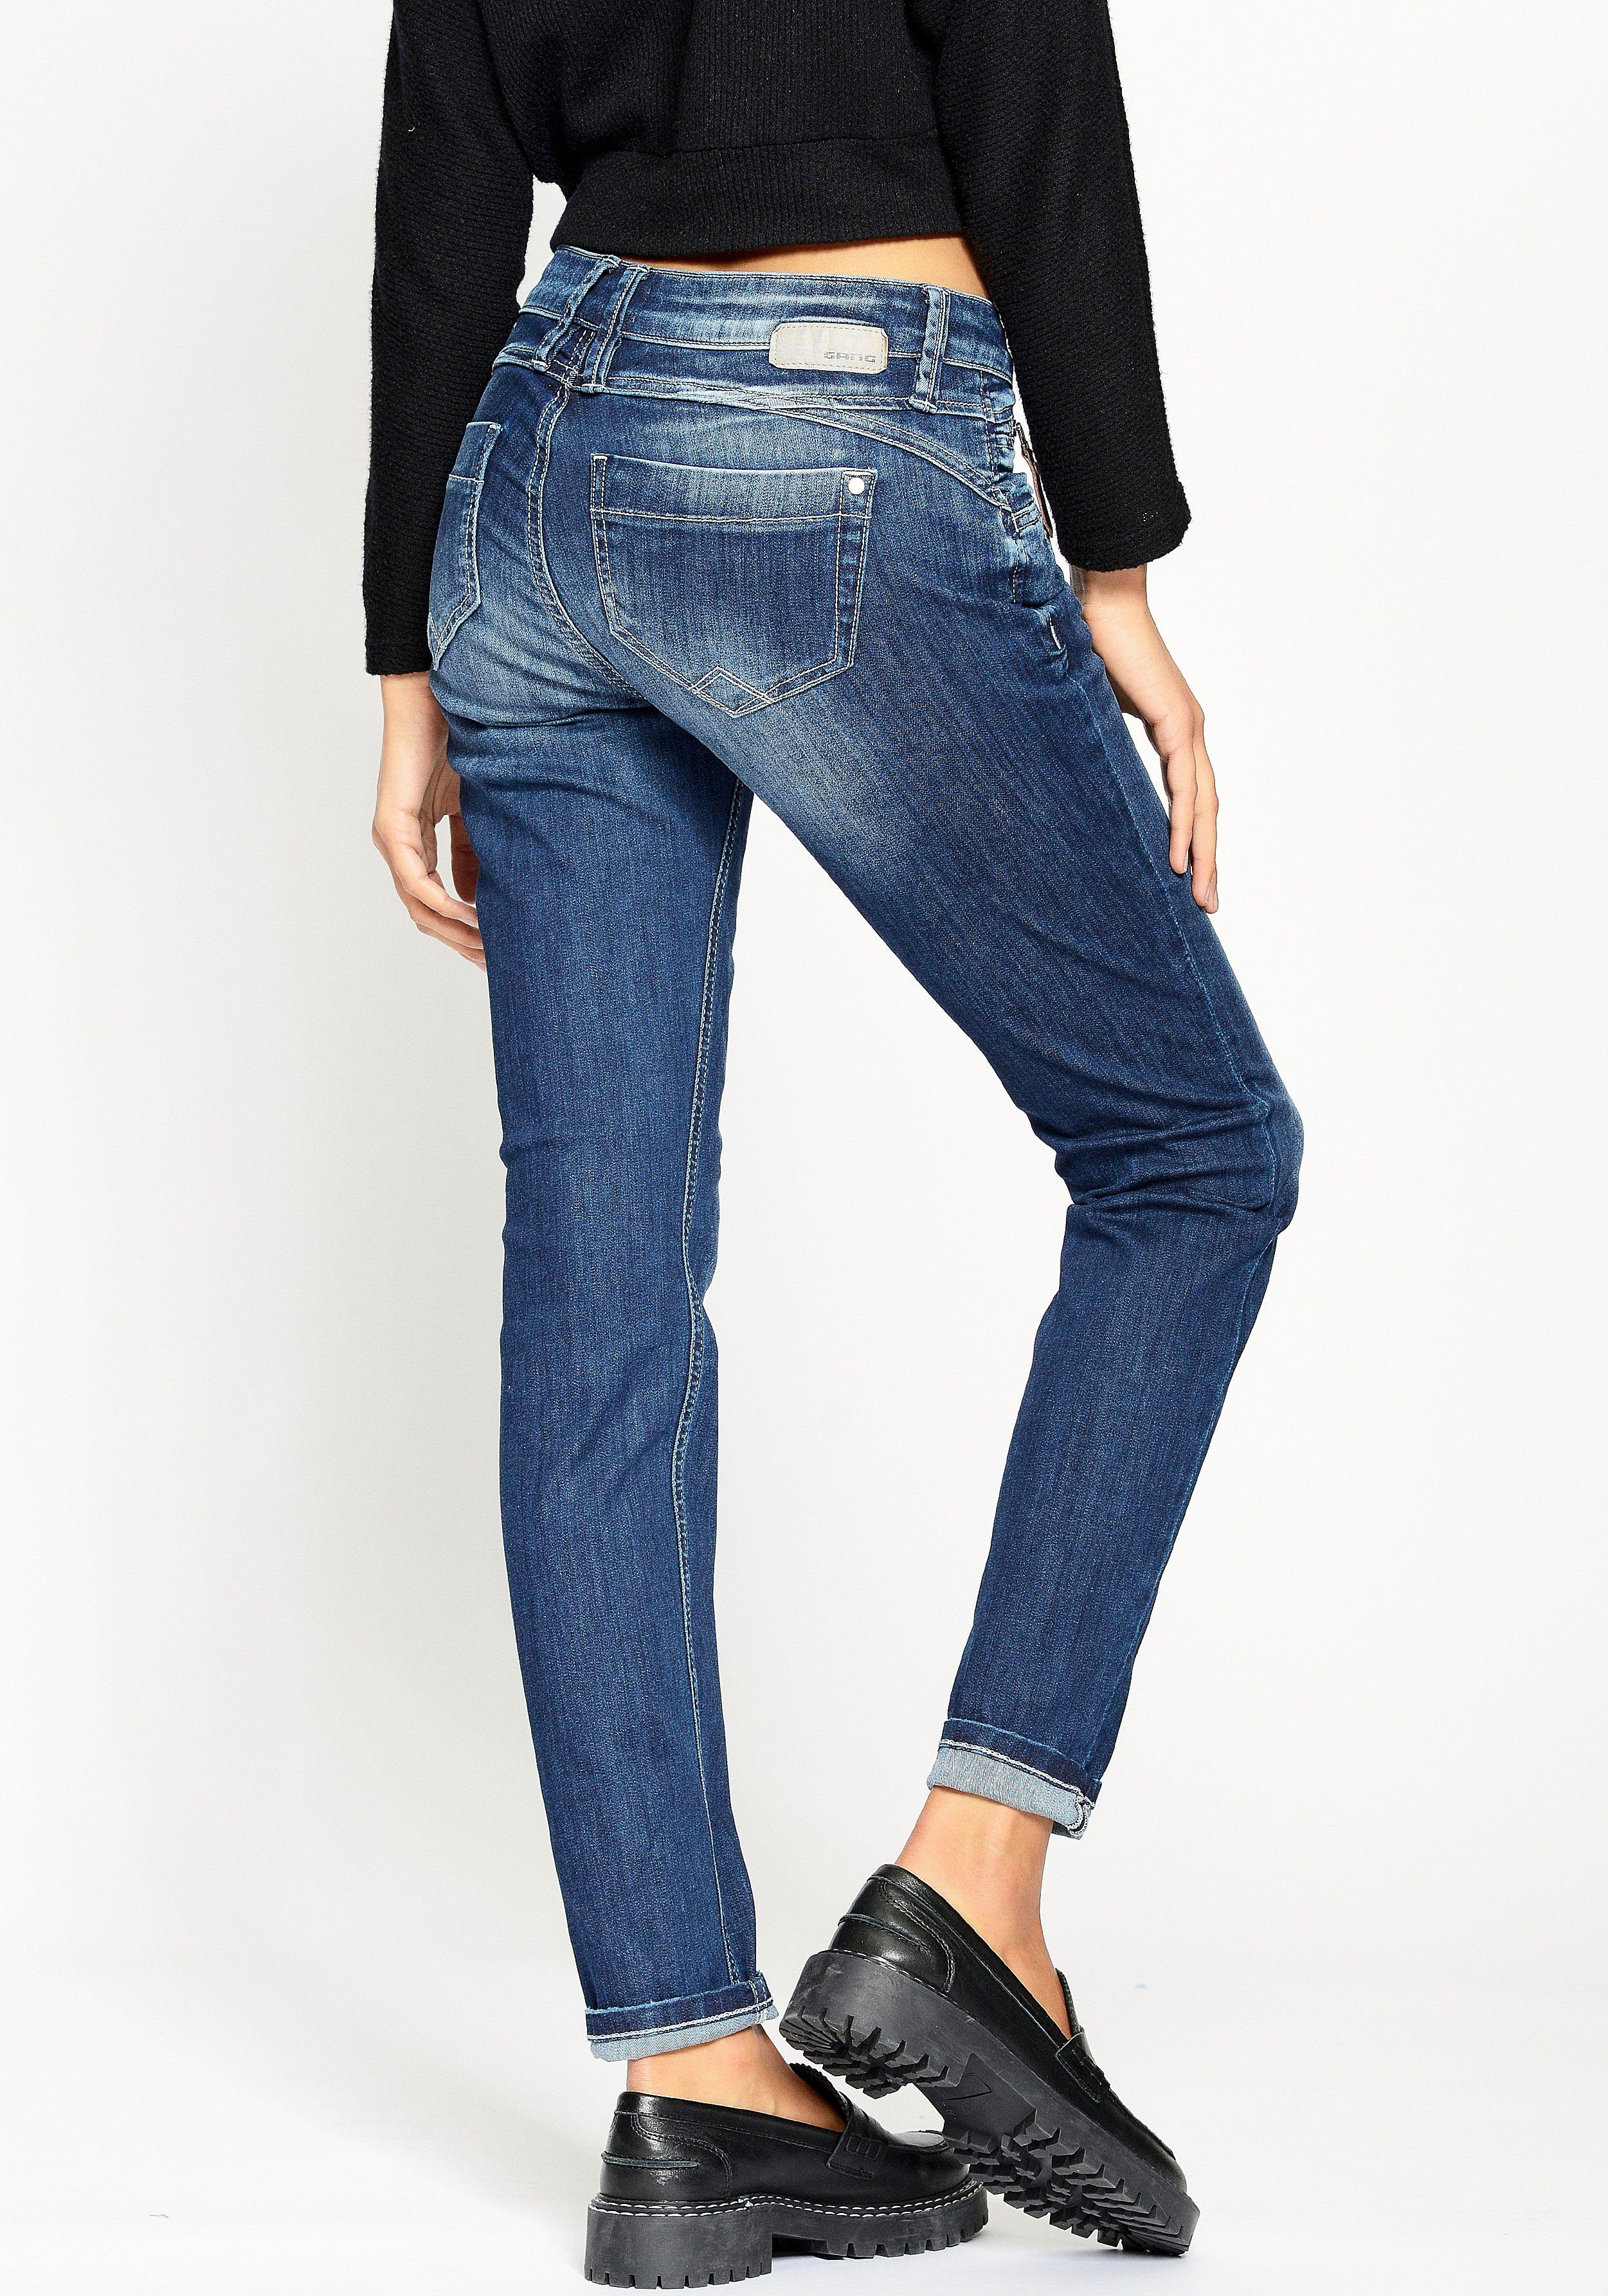 Denimqualität 94Nikita Wohlfühlfaktor an Zipper-Detail mit Skinny-fit-Jeans mit der durch GANG Coinpocket, Stretchanteil